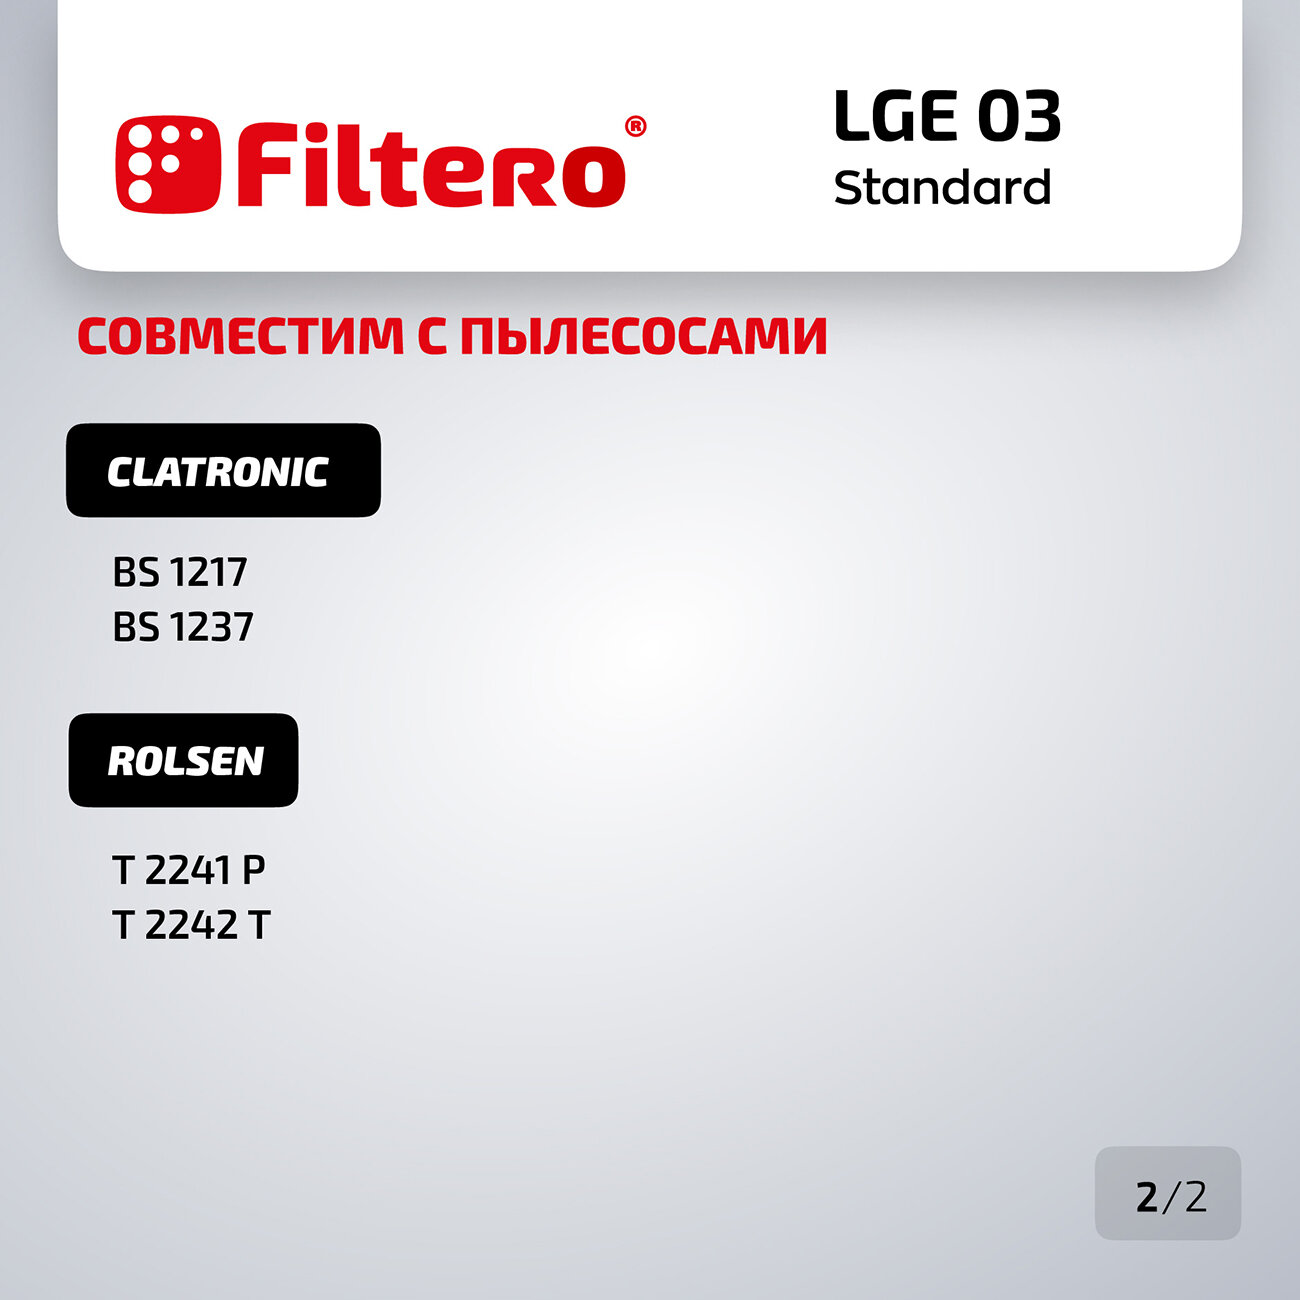 Пылесборники FILTERO LGE 03 Standard, двухслойные, 5 шт., для пылесосов LG - фото №5